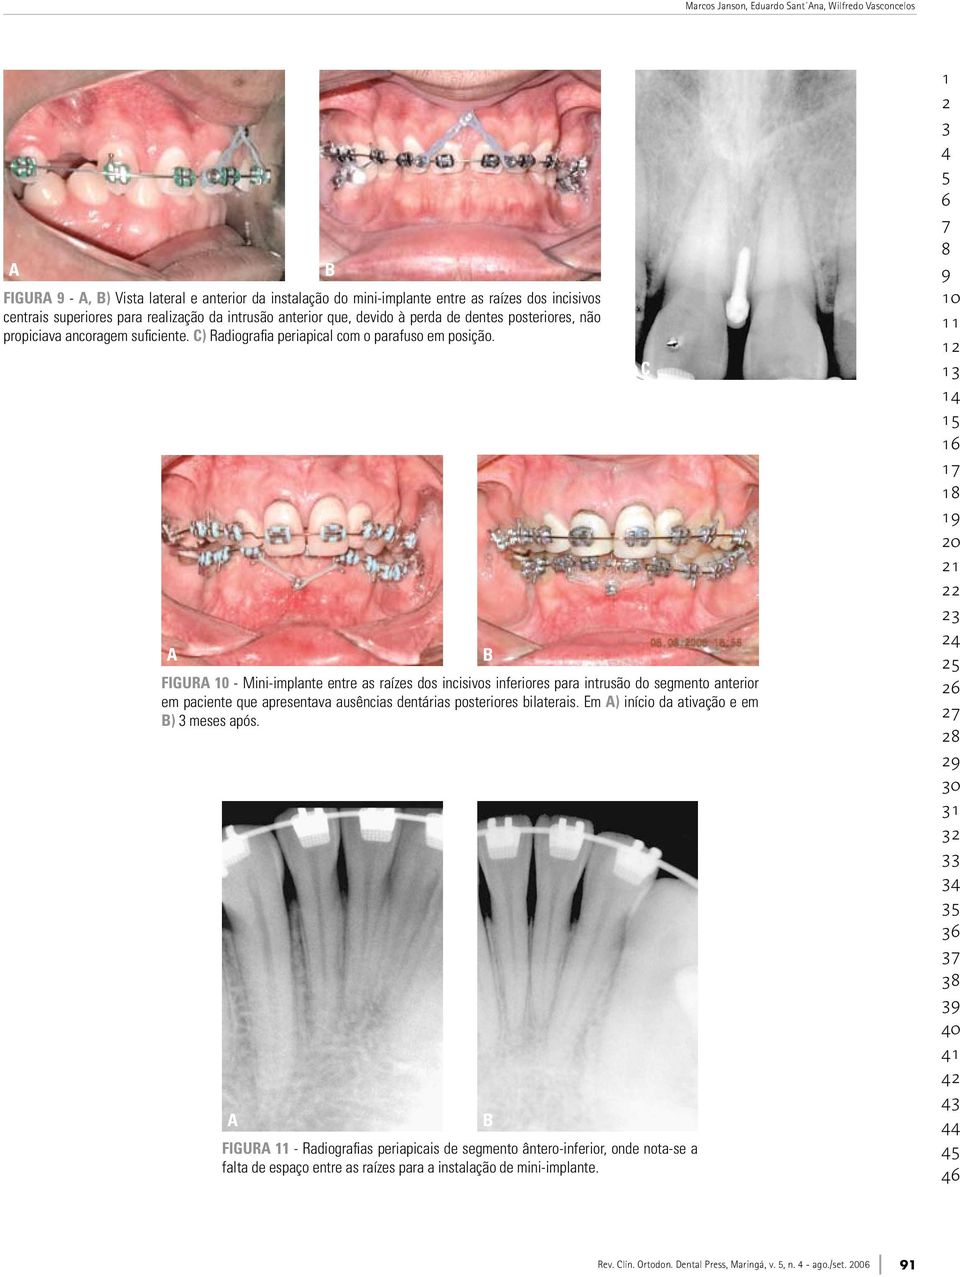 a b figura - Mini-implante entre as raízes dos incisivos inferiores para intrusão do segmento anterior em paciente que apresentava ausências dentárias posteriores bilaterais.